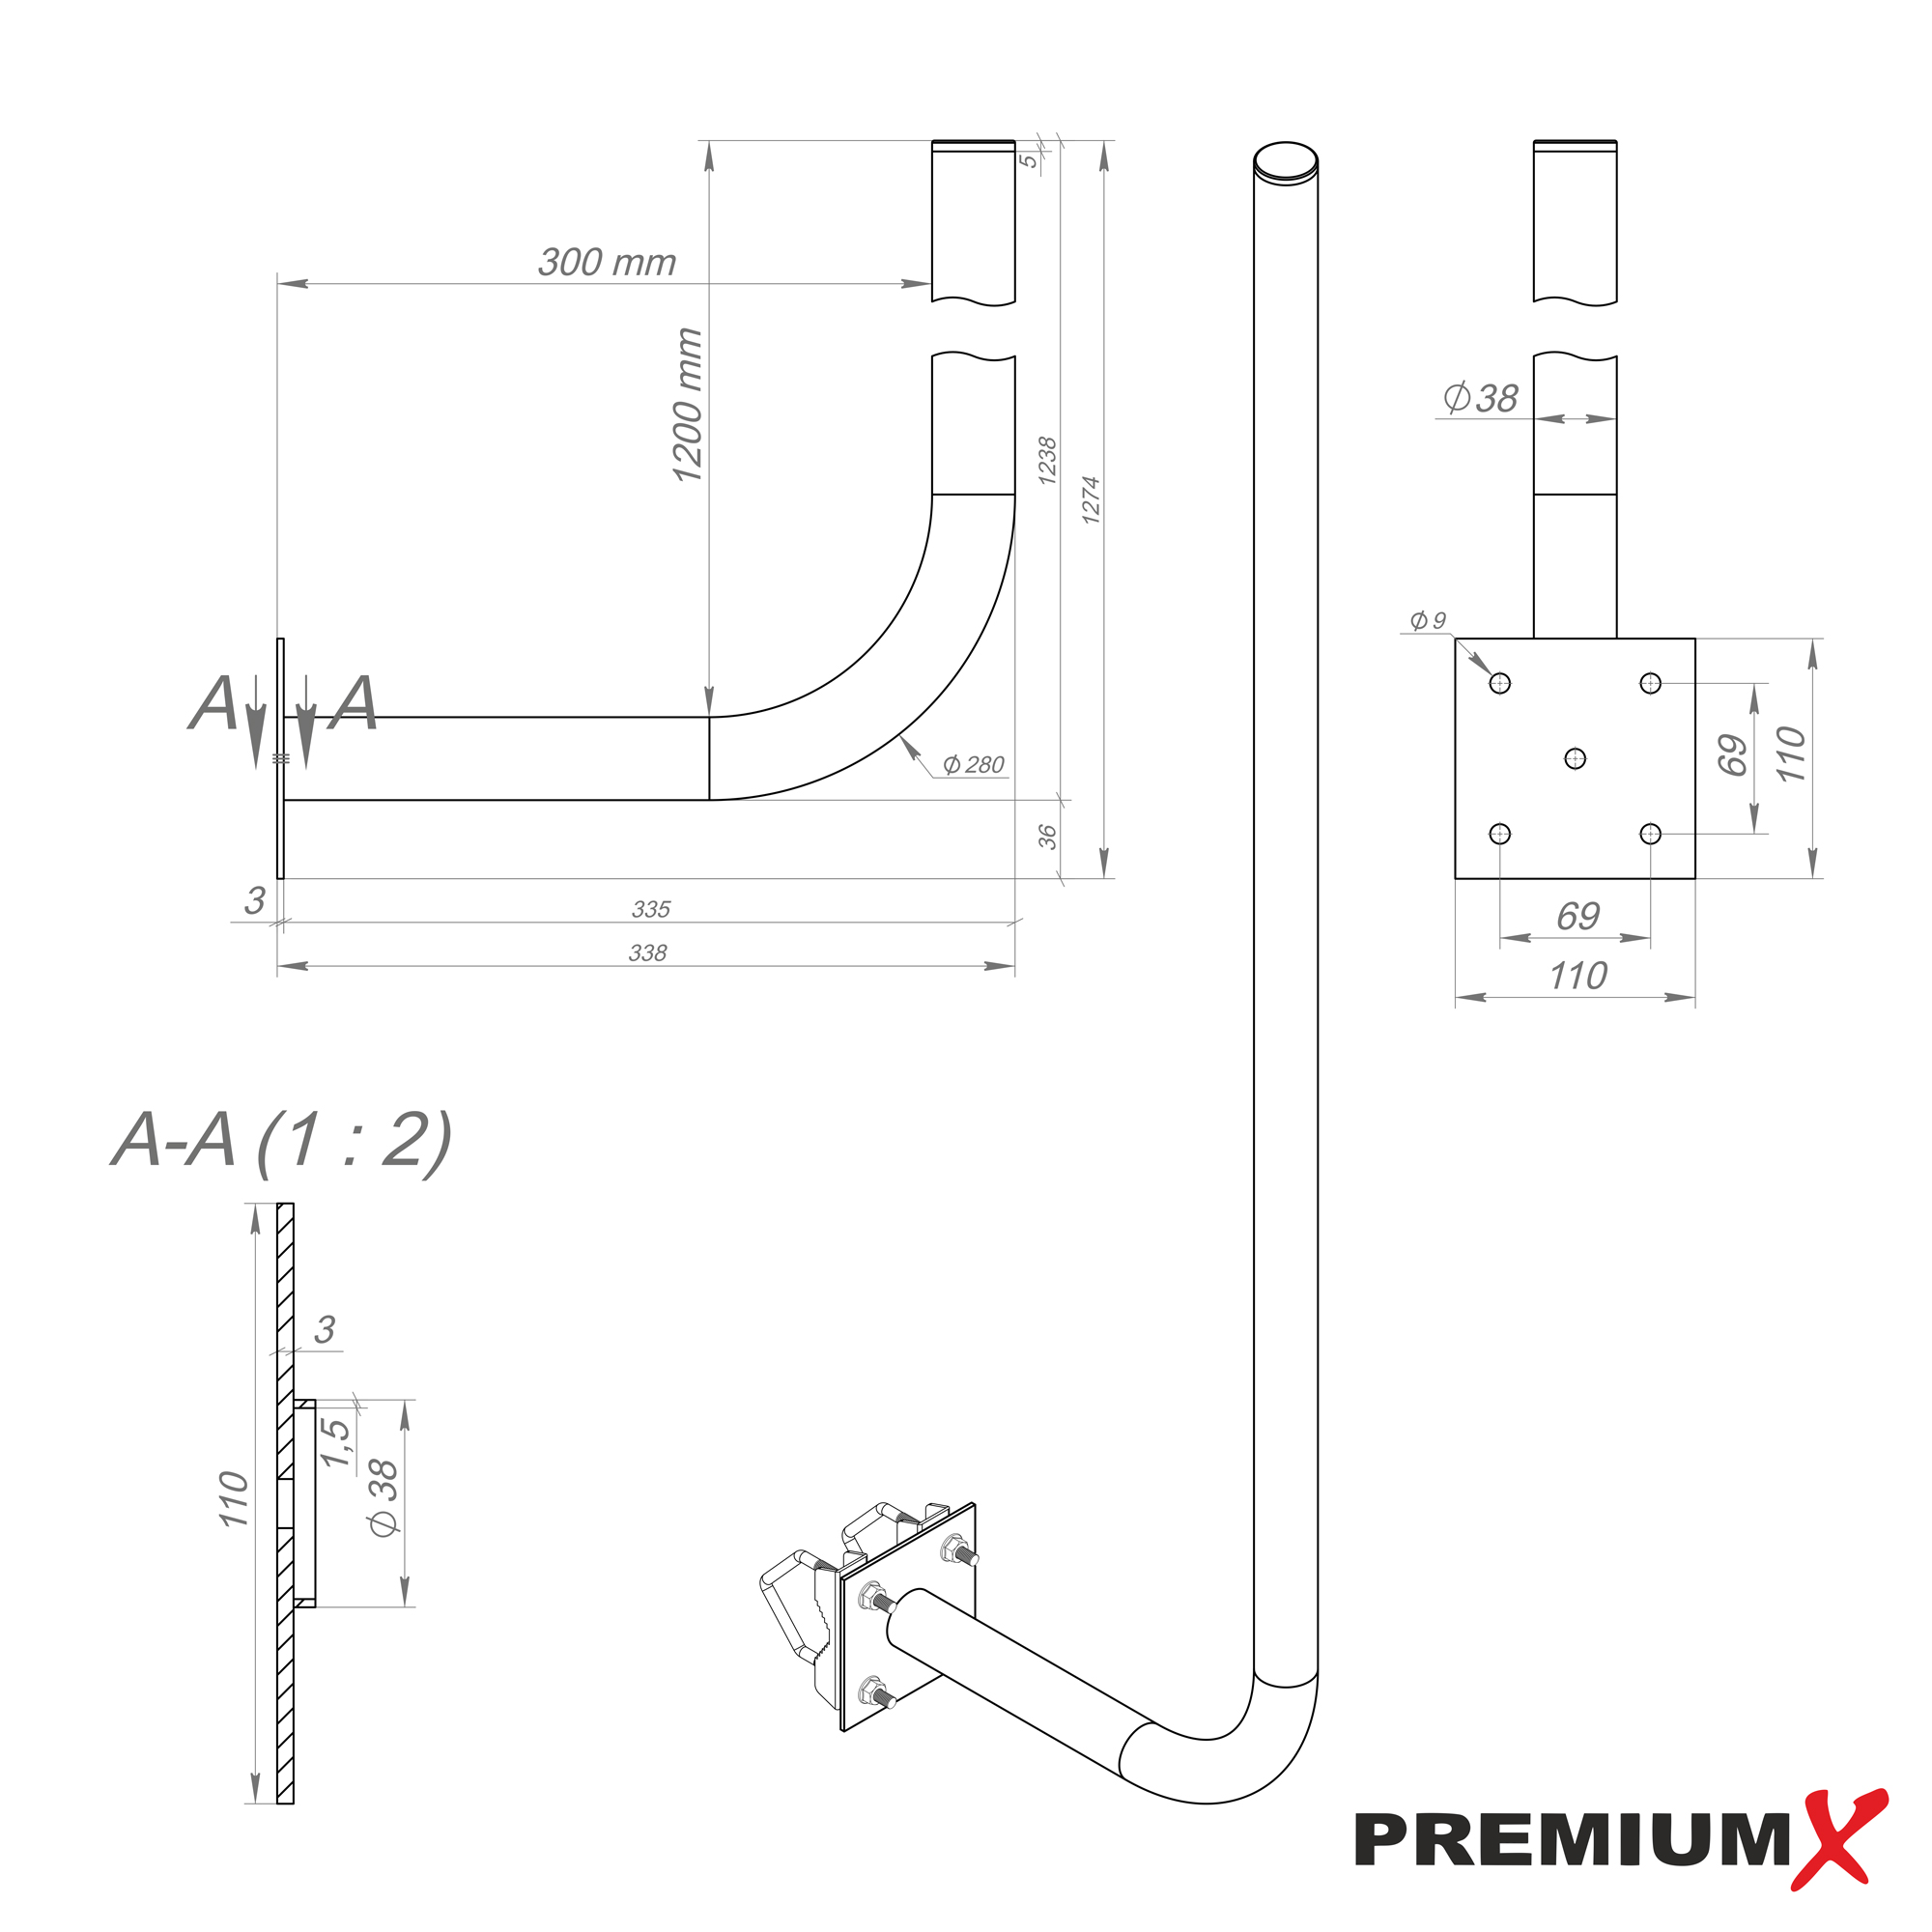 PREMIUMX 30cm Wandhalter 120cm Mast Wand SAT-Wandhalterung, Ø 38mm Silber Stahl mit Schellen Halterung